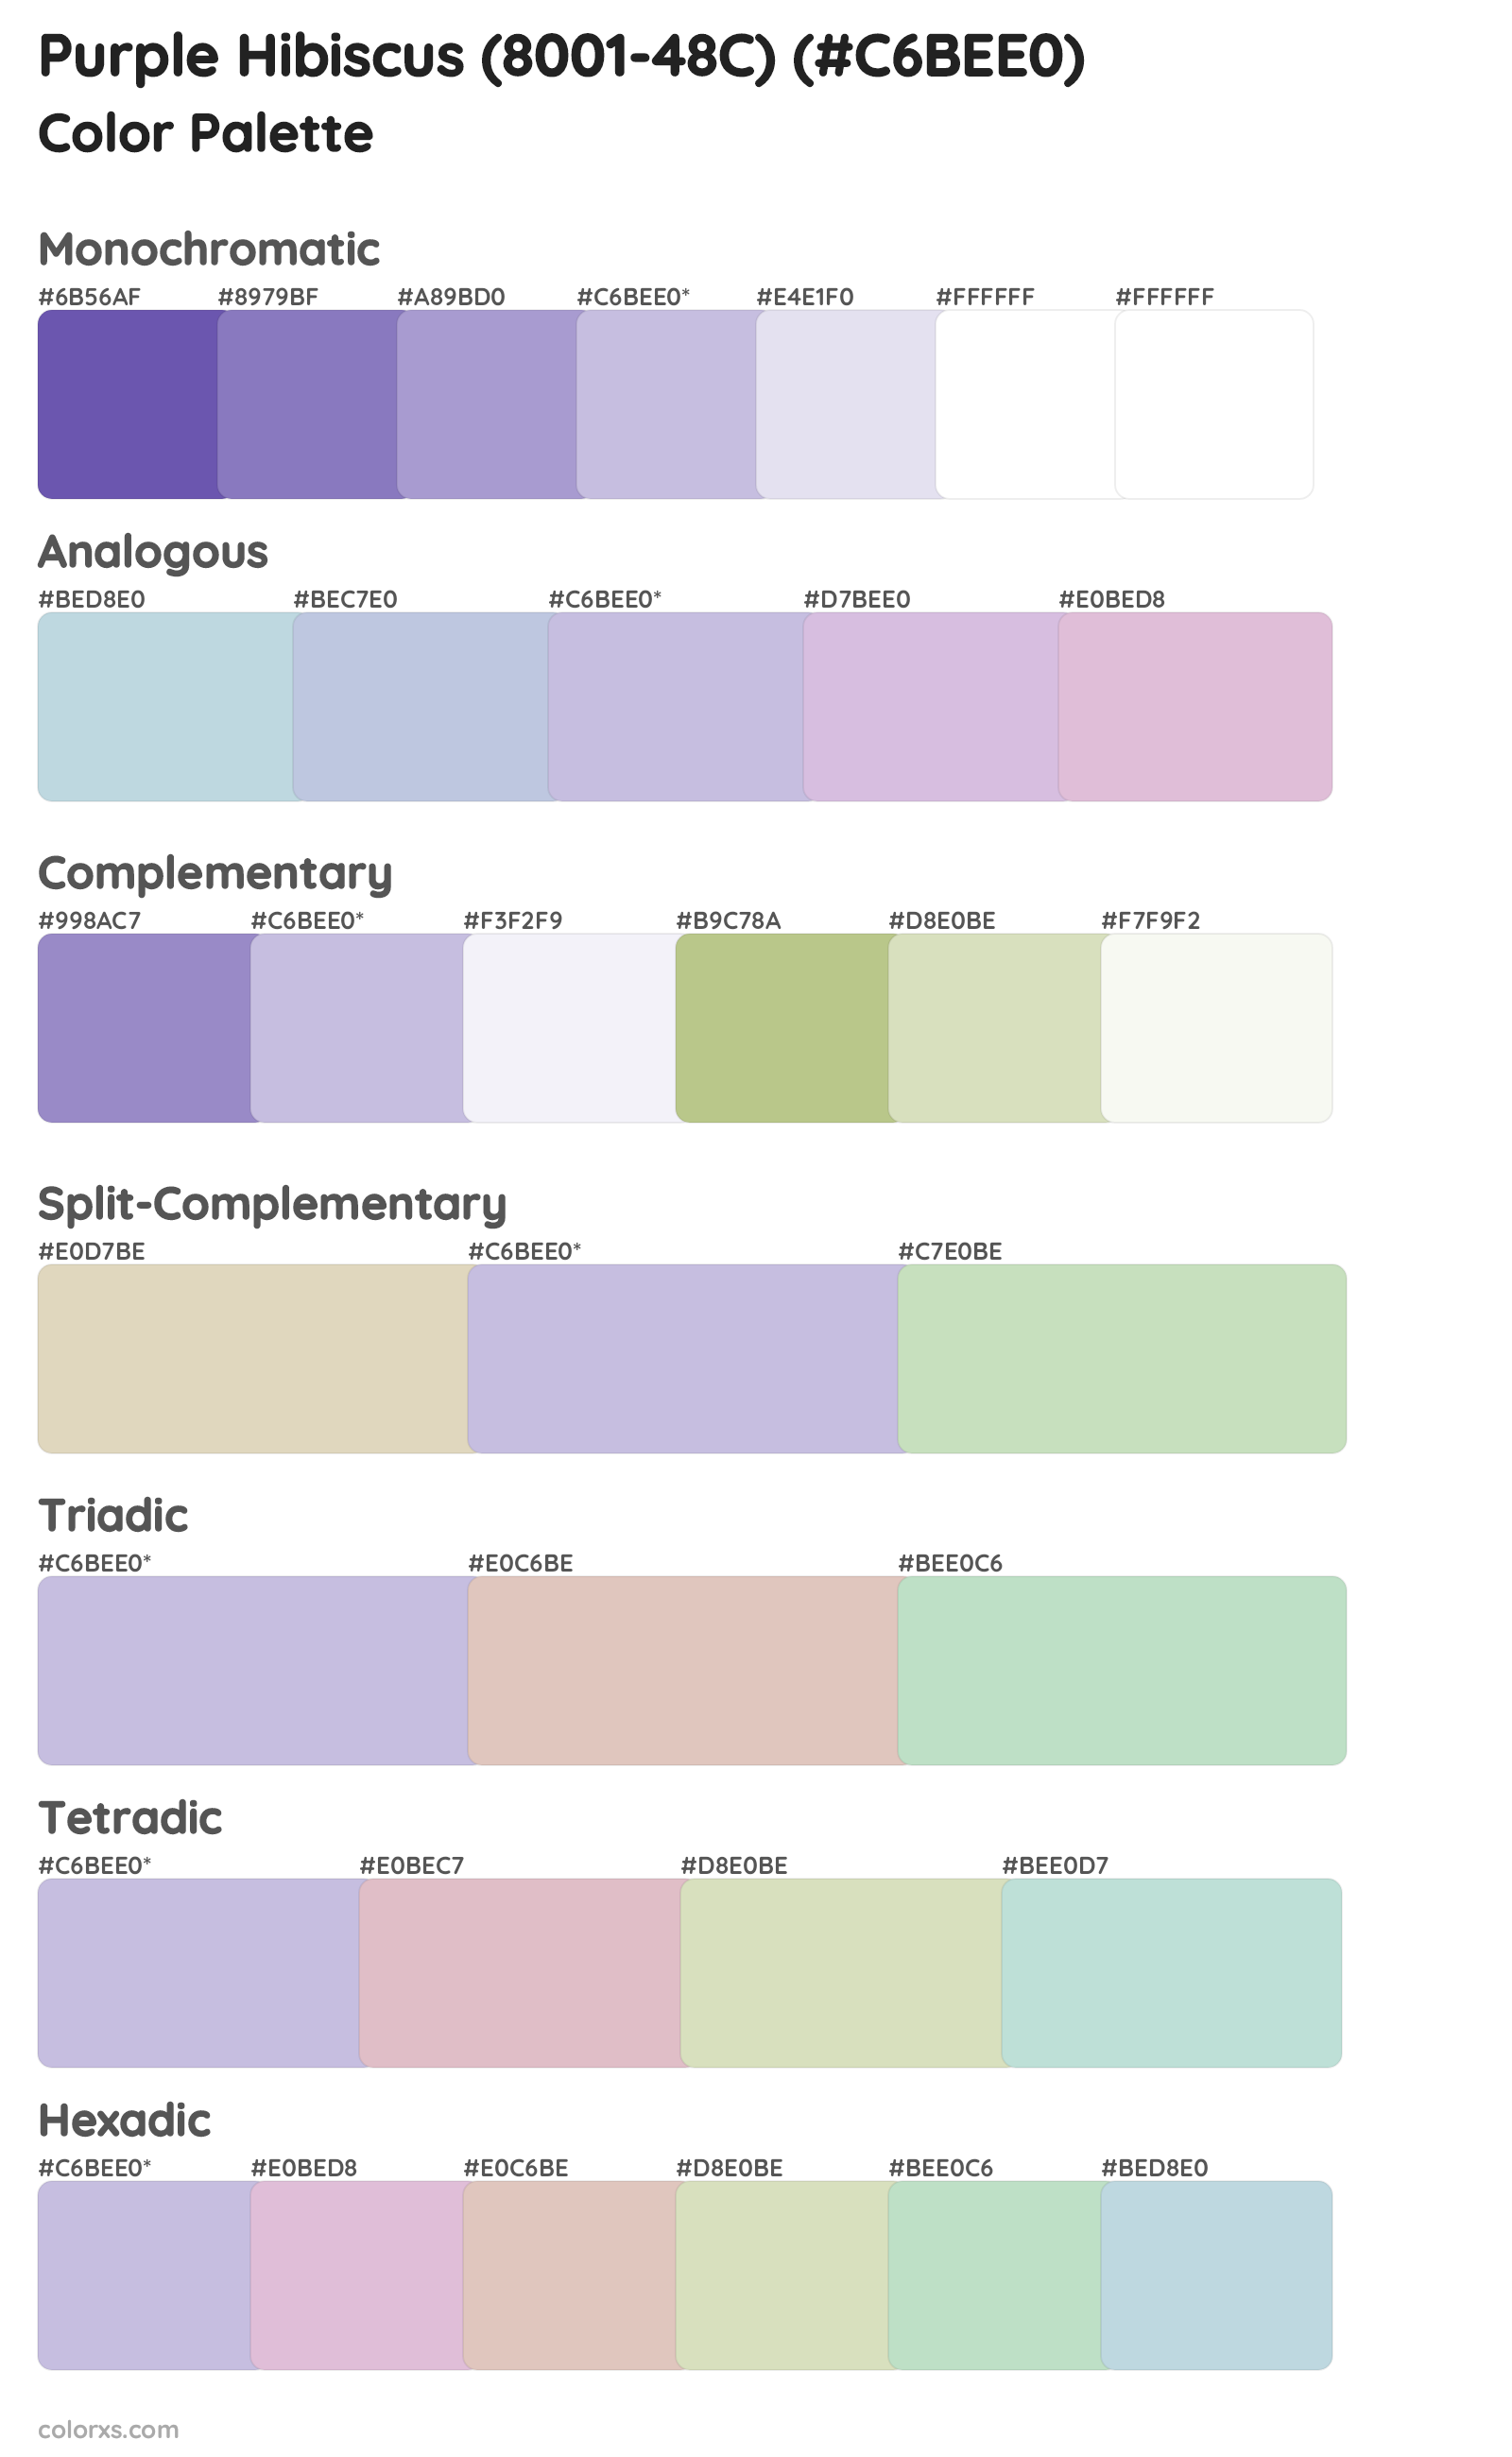 Purple Hibiscus (8001-48C) Color Scheme Palettes